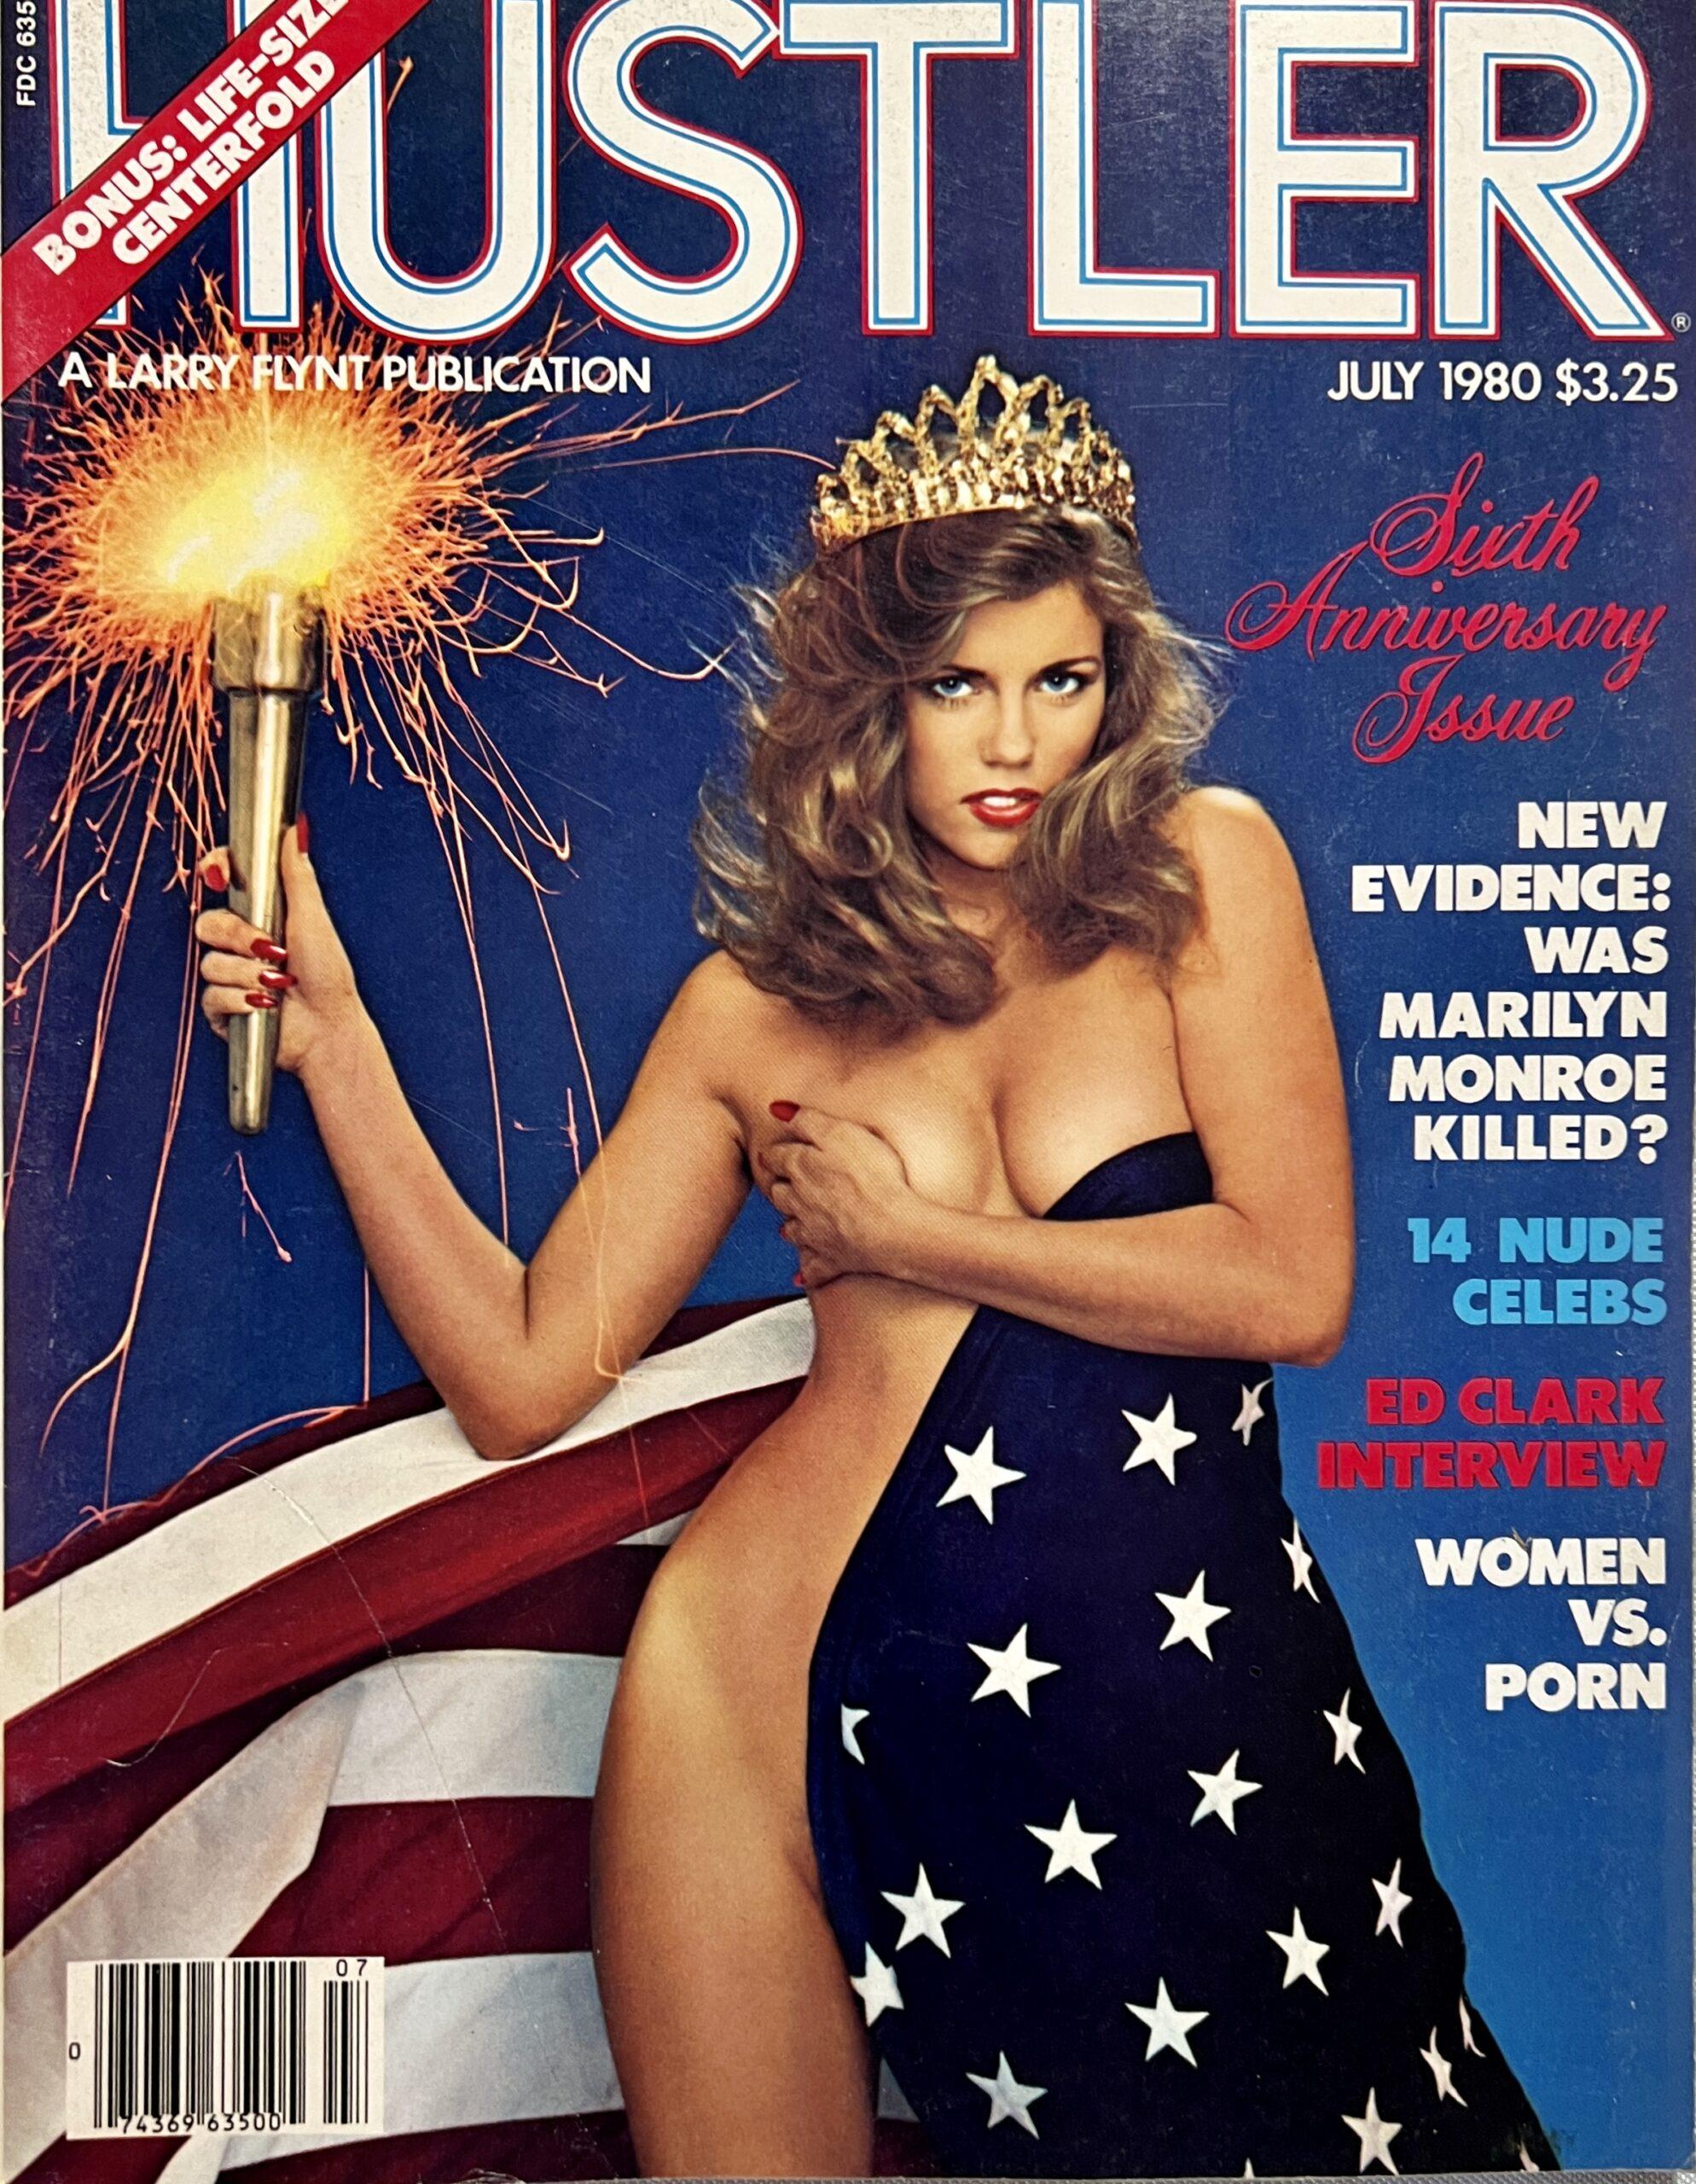 Hustler Xxx Magazine Ads 90s - Hustler July 1980 *Sixth Anniversary Issue* - Vintage Magazines 16